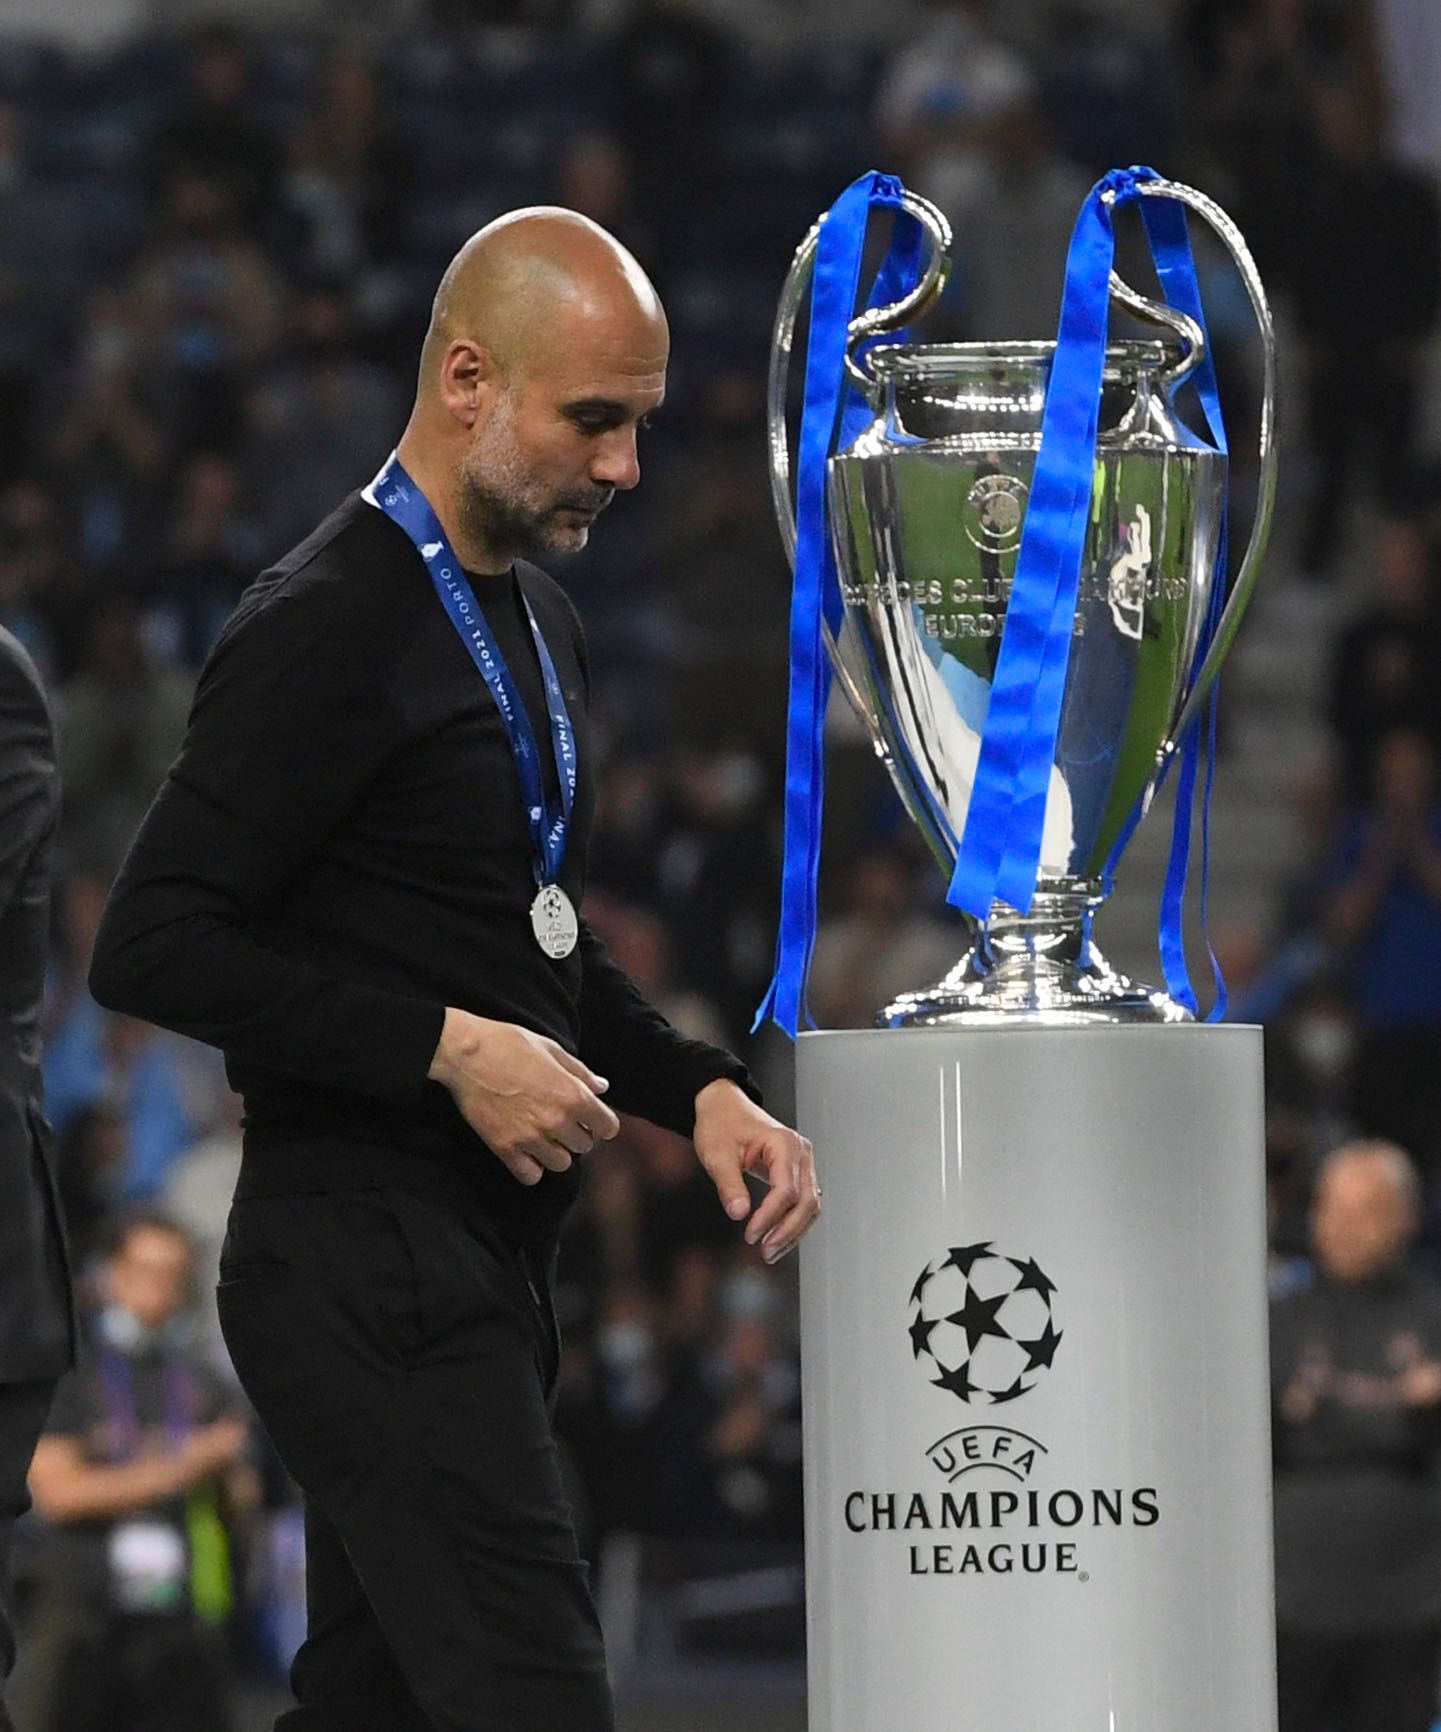 Guardiola walks past the Champions League trophy.